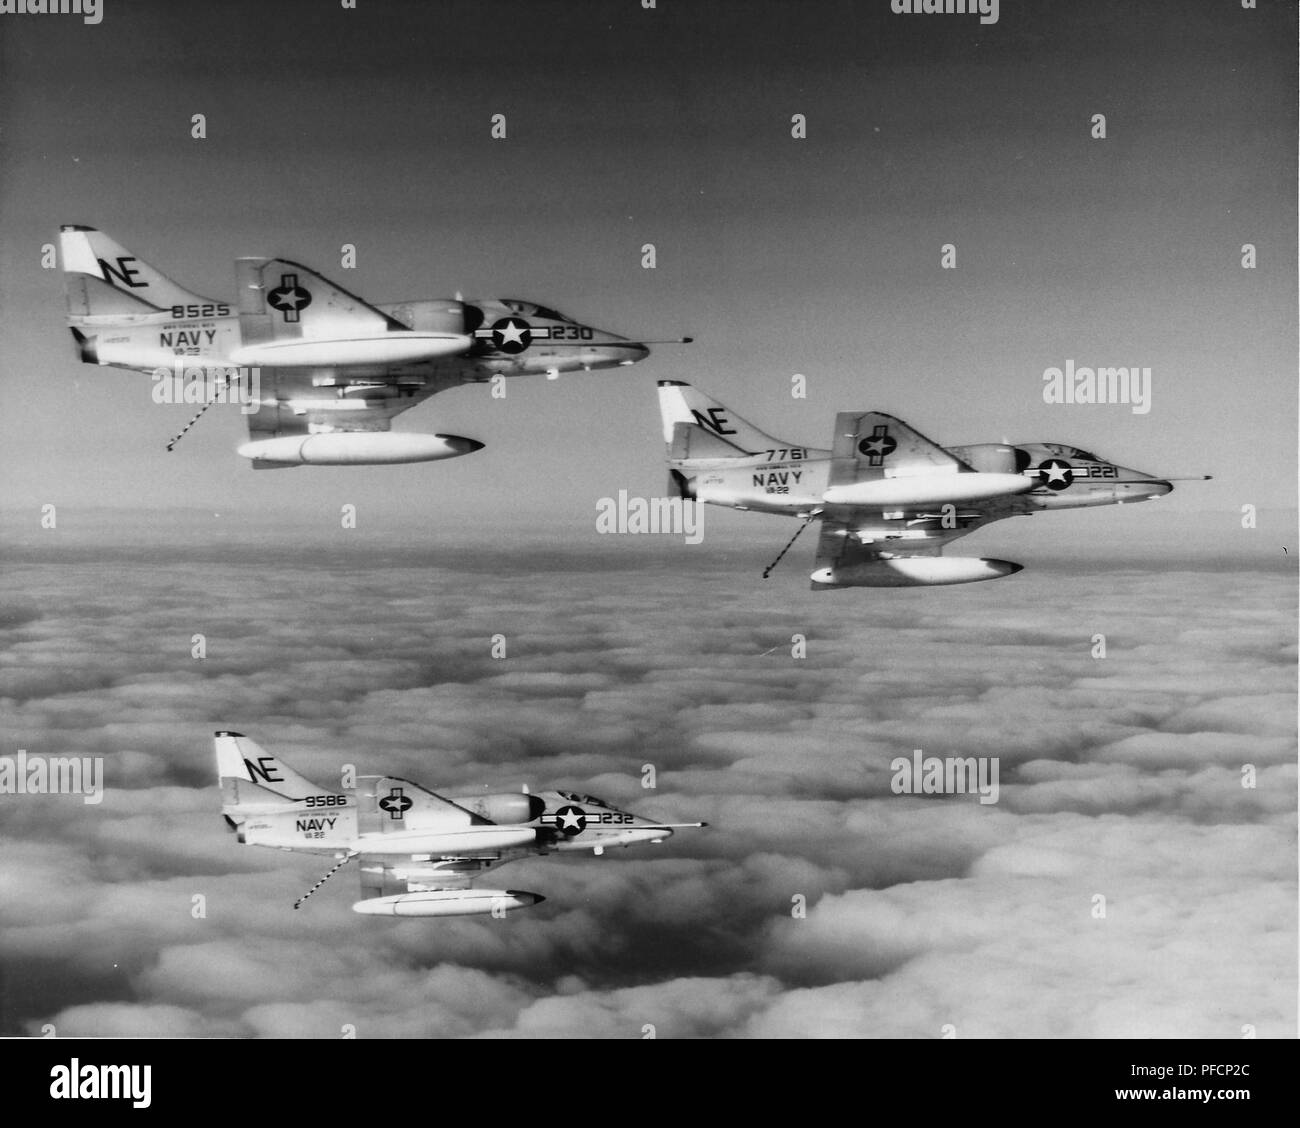 United States Air Force A4 Skyhawk Flugzeuge im Formationsflug während des Vietnam Krieges, 1970. () Stockfoto